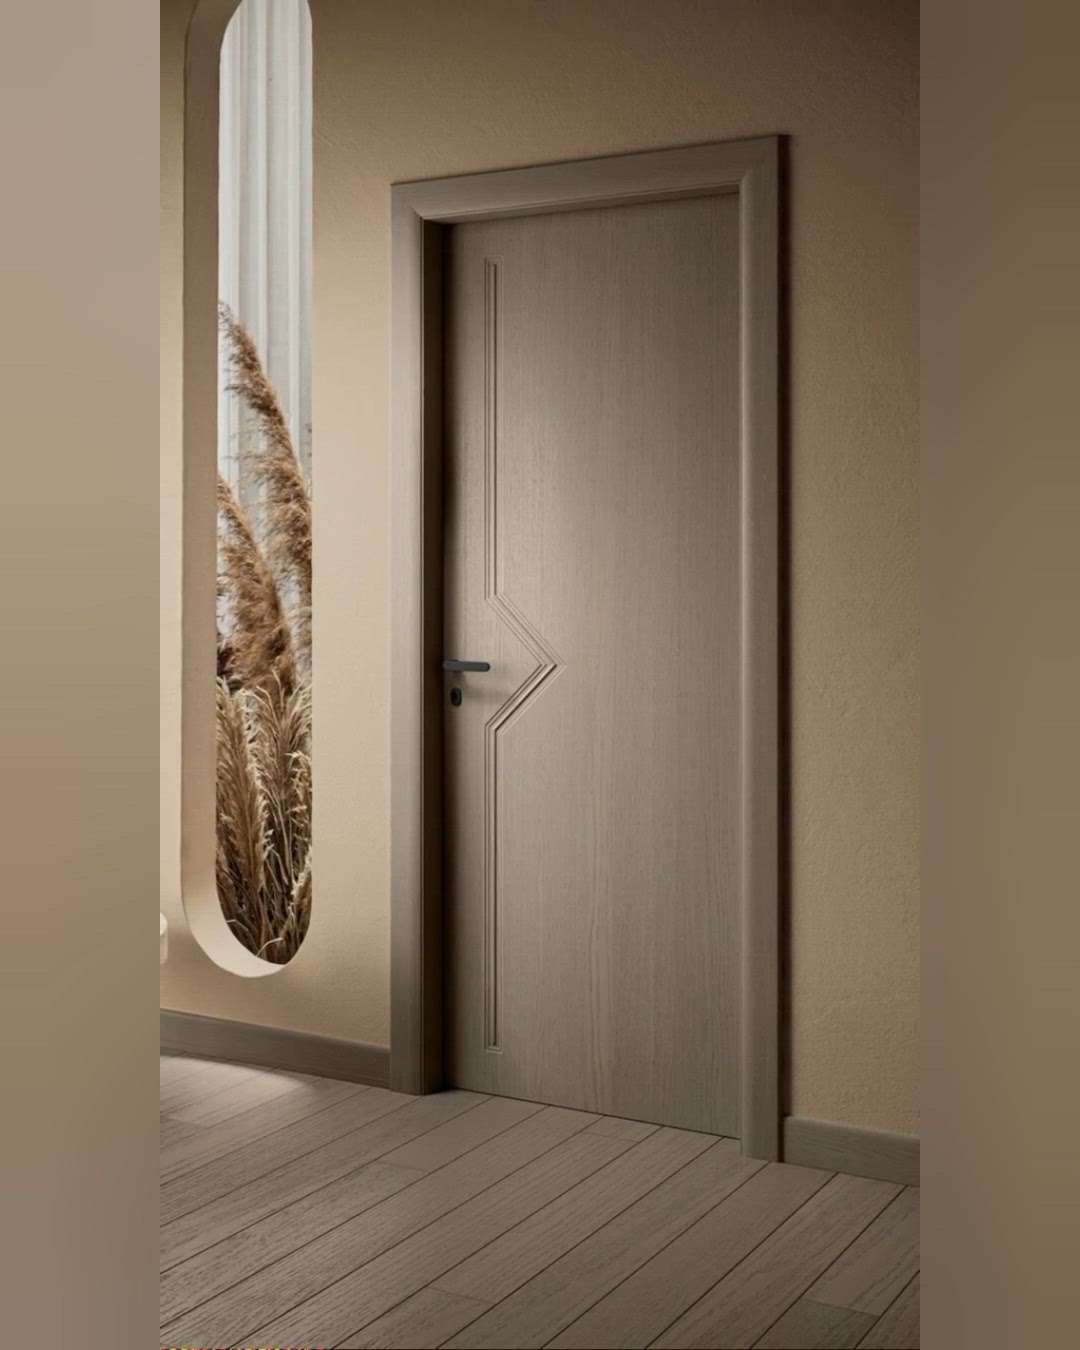 #creatorsofkolo  #doors  #buy  #rightdoors #FoldingDoors  #BedroomIdeas  #bedroomdoors  #bedroomrenovation  #FoldingDoors  #FrenchDoor  #SlidingDoors  #swingdoor  #FrontDoor  #FrenchDoor  #HomeDecor  #homeinterior  #homeplan  #BathroomIdeas  #BathroomRenovation  #bathrooms